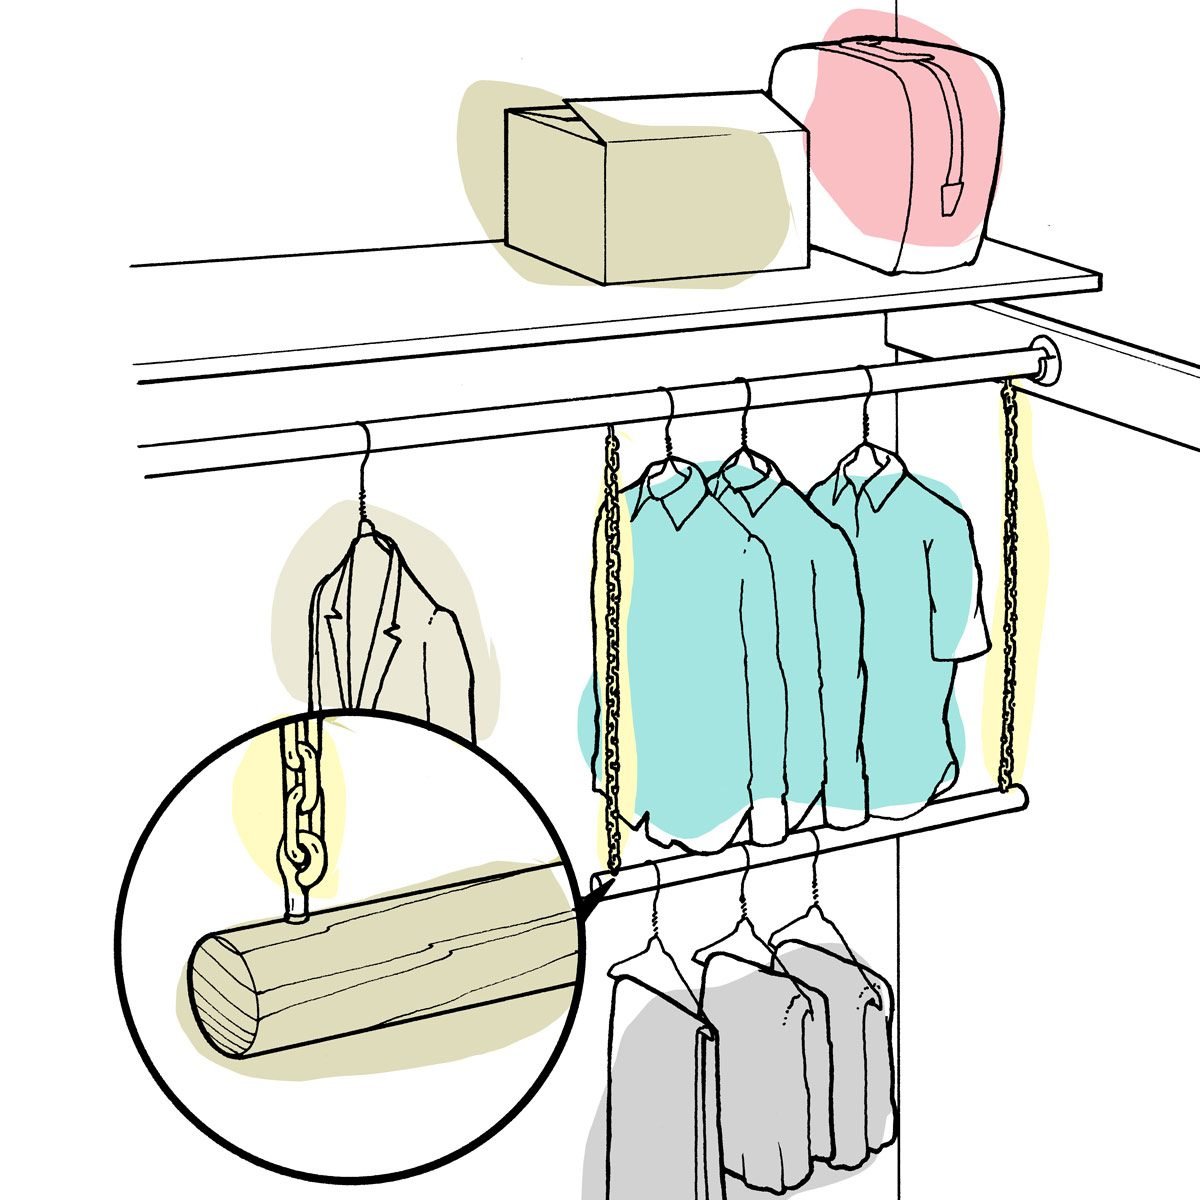 Trapeze clothes hanger